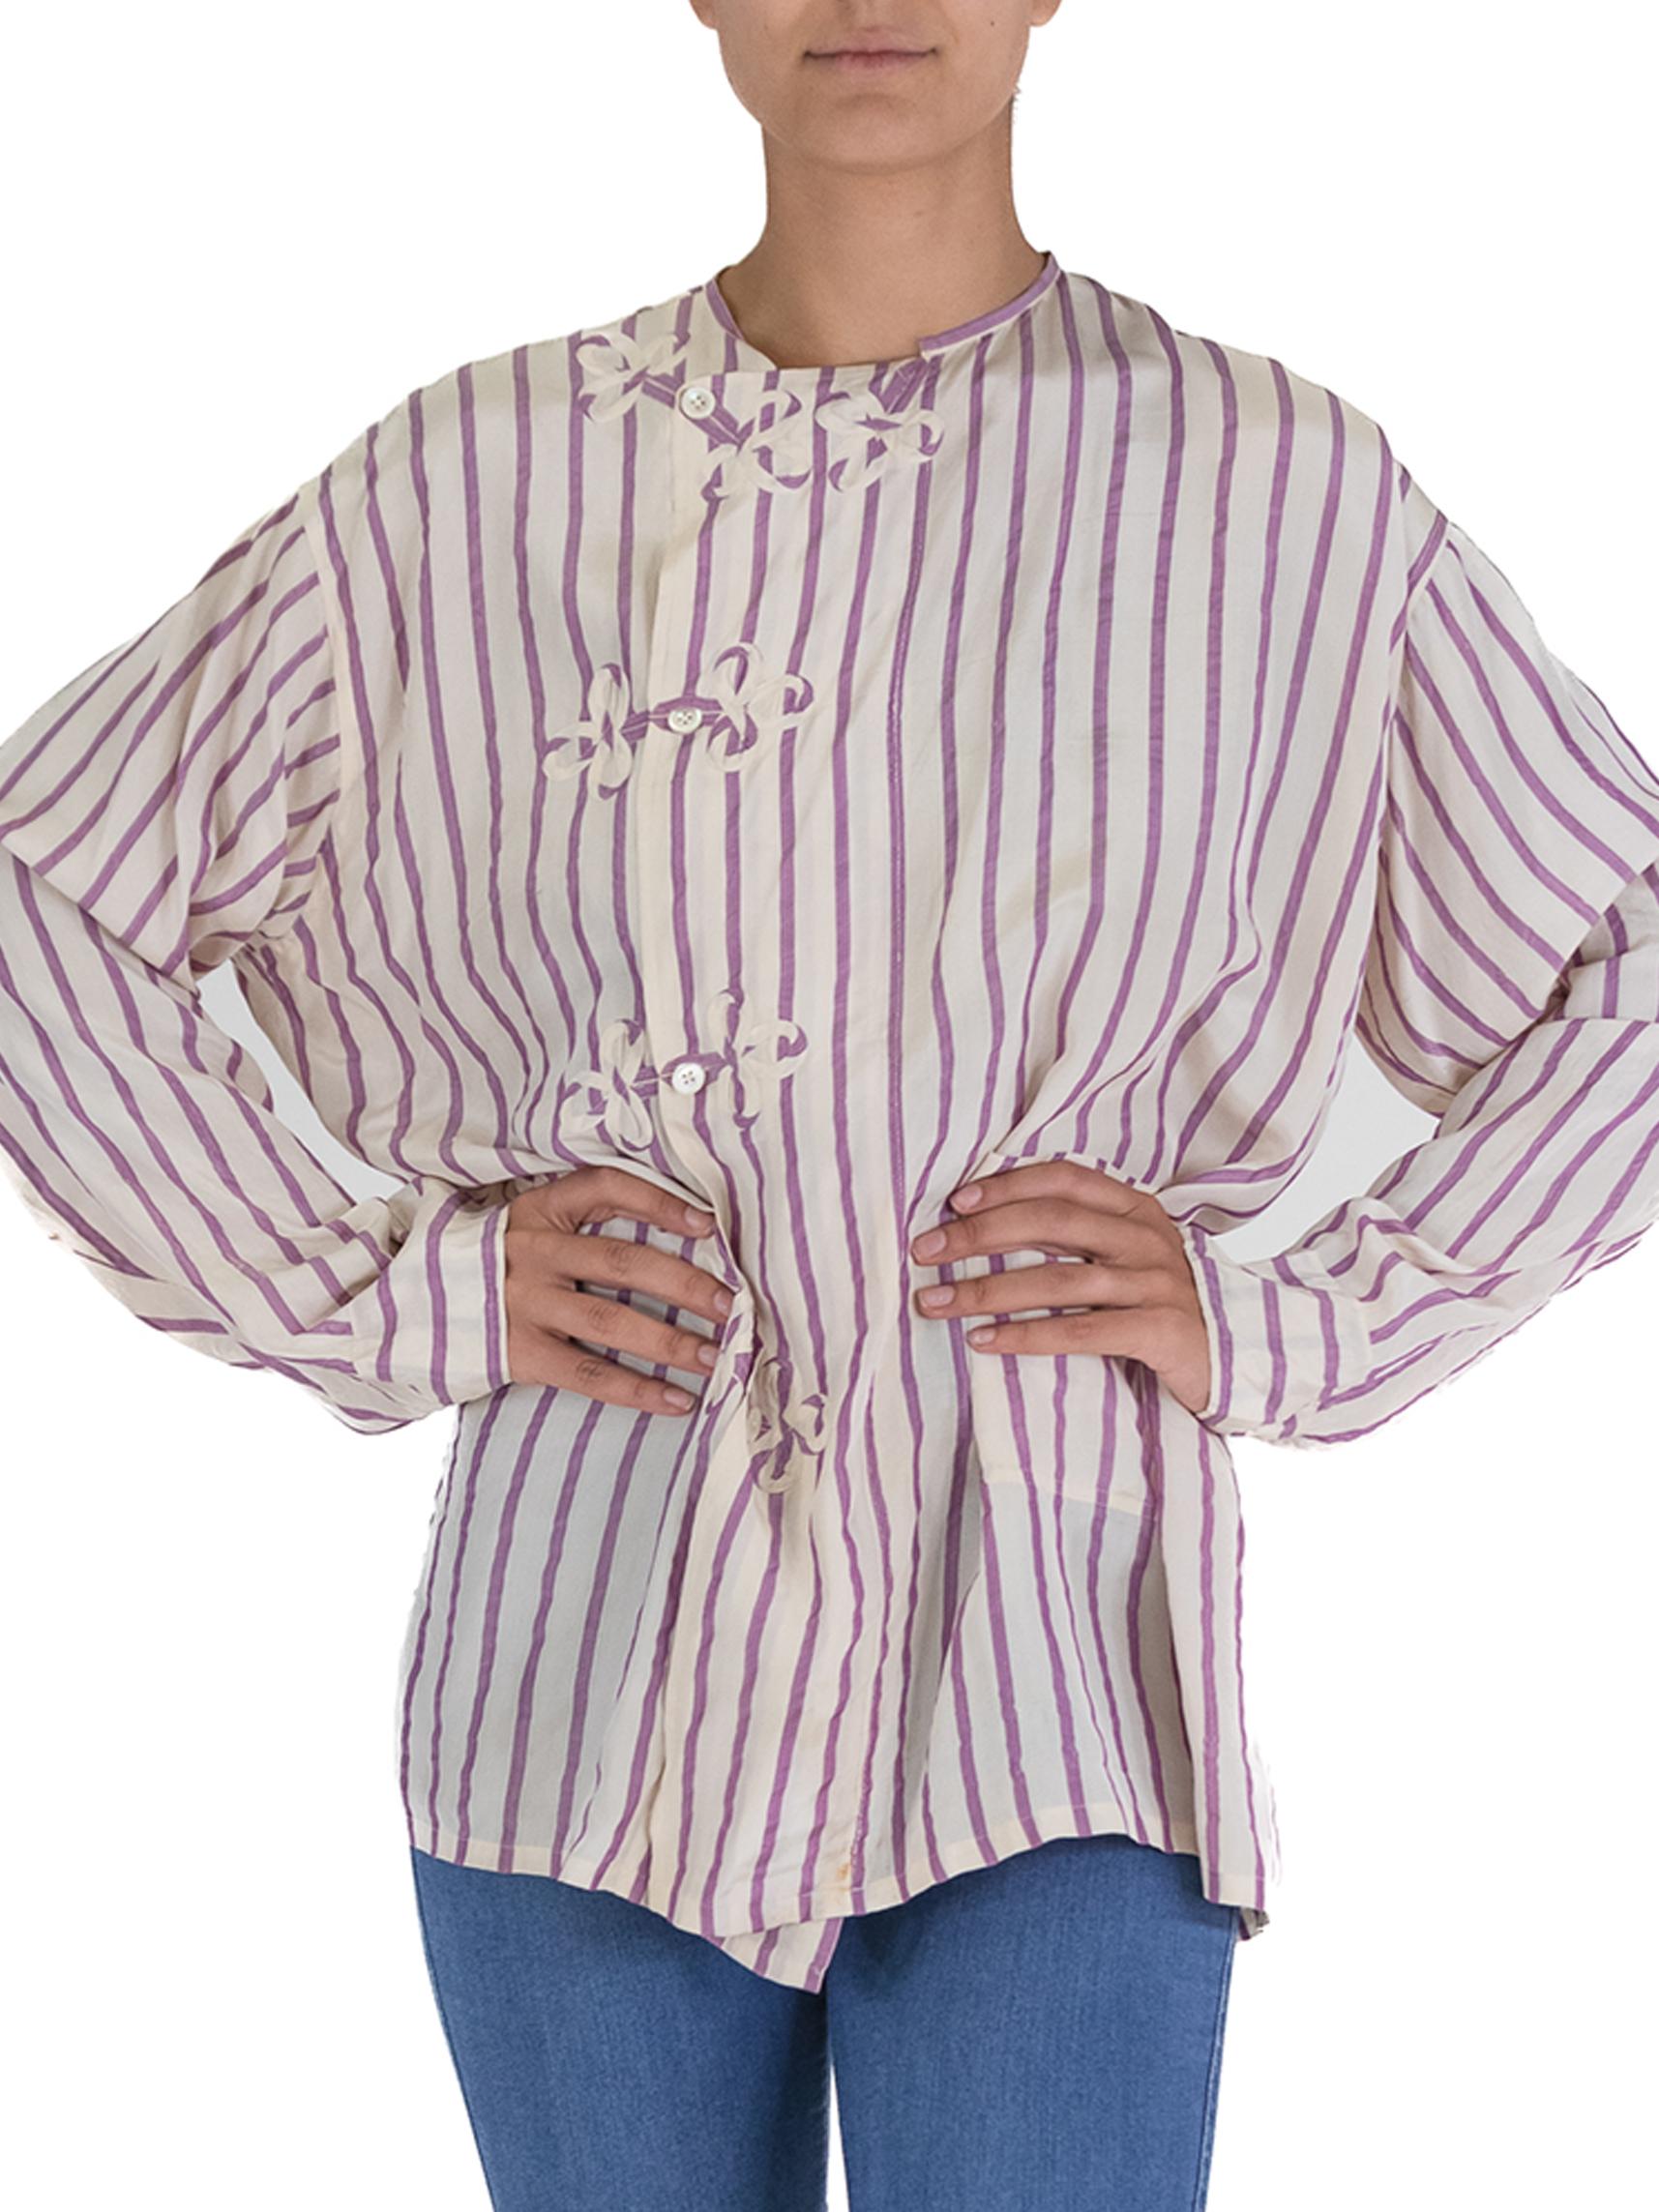 Victorian White & Lavender Silk Striped Antique Pajama Top For Sale 2